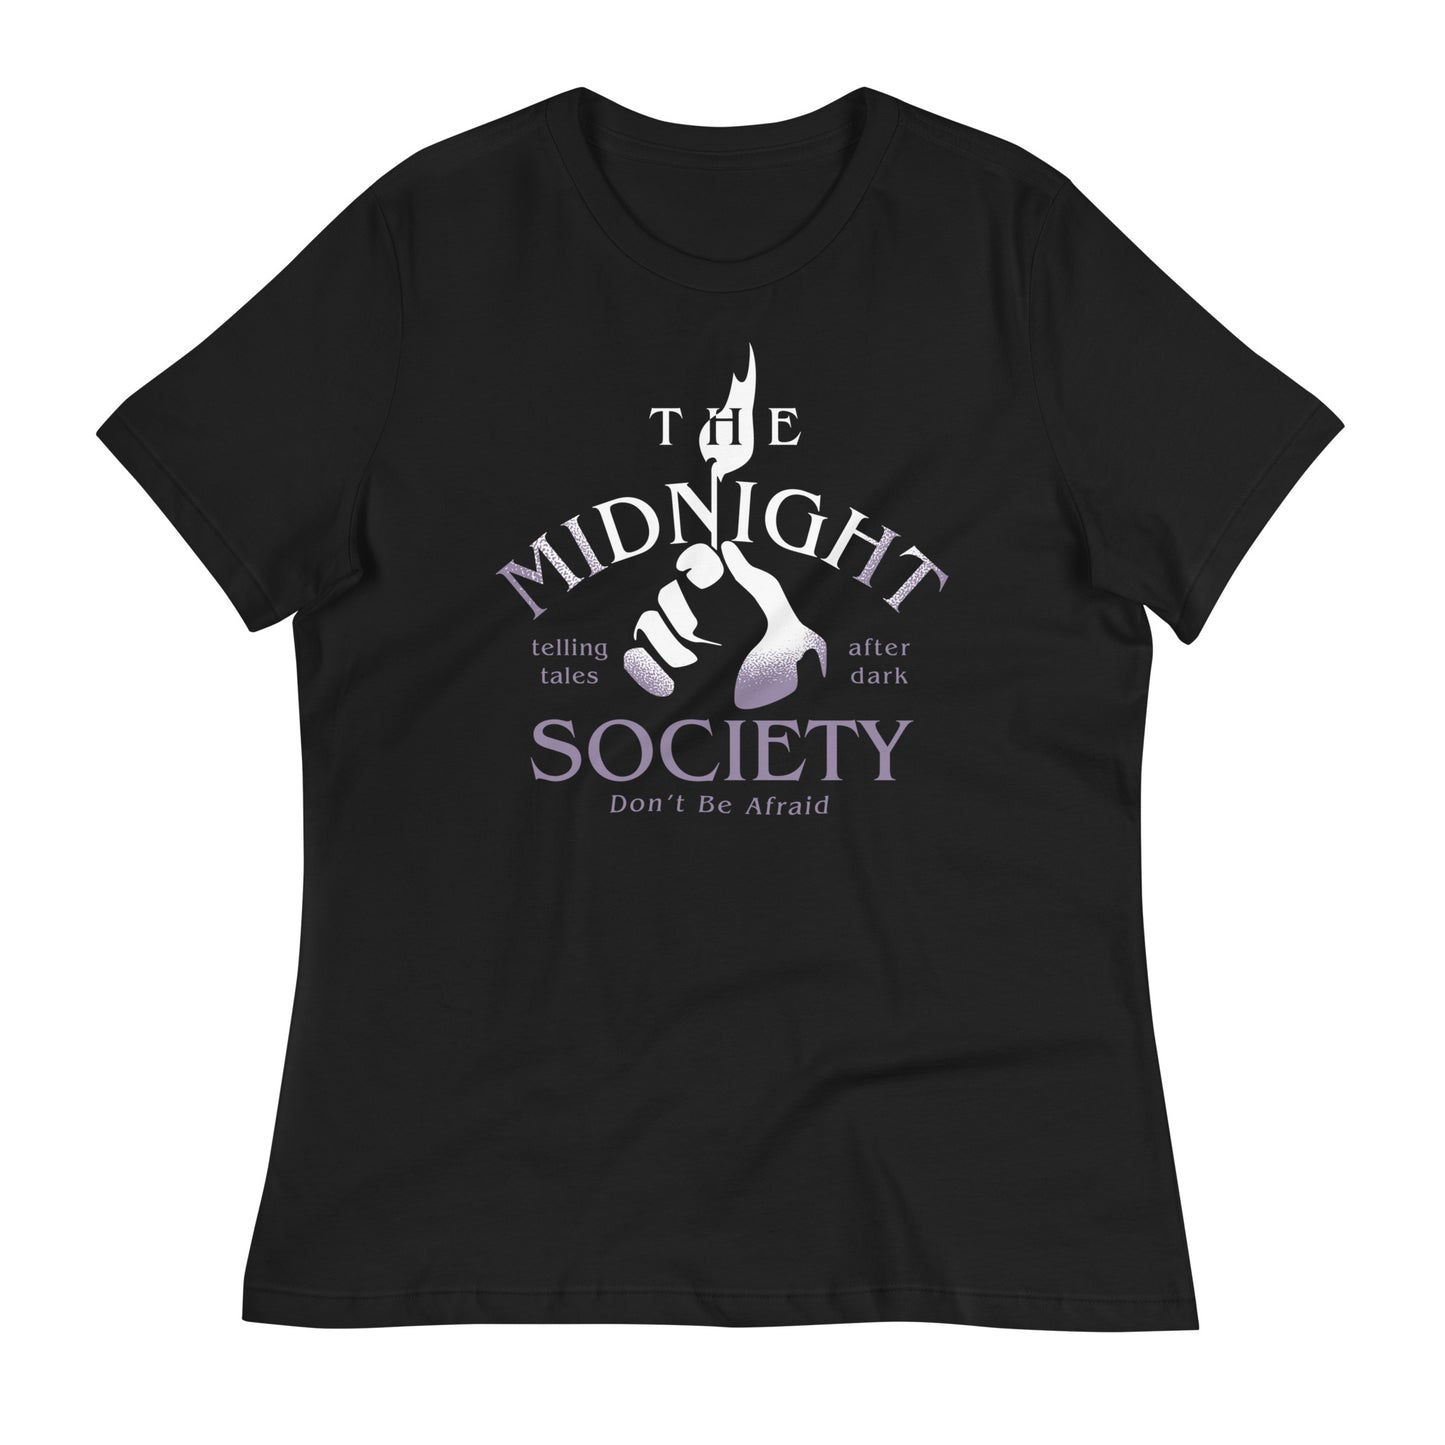 The Midnight Society Women's Signature Tee